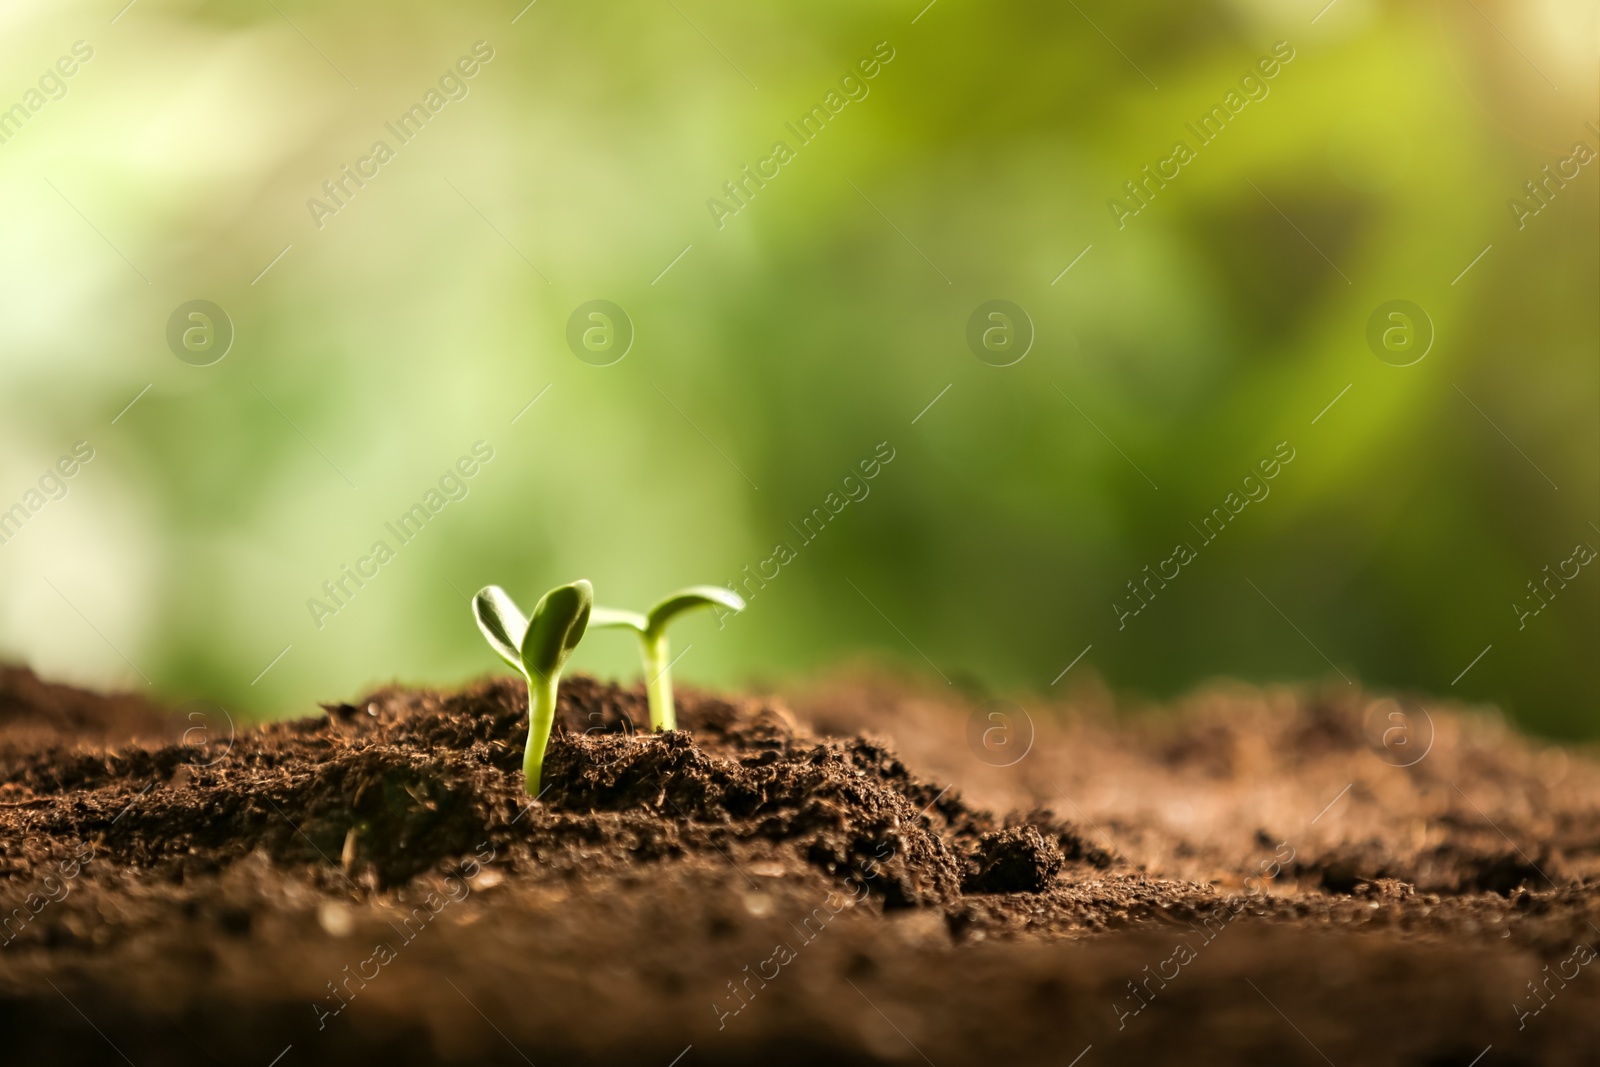 Photo of Little green seedlings growing in soil, closeup